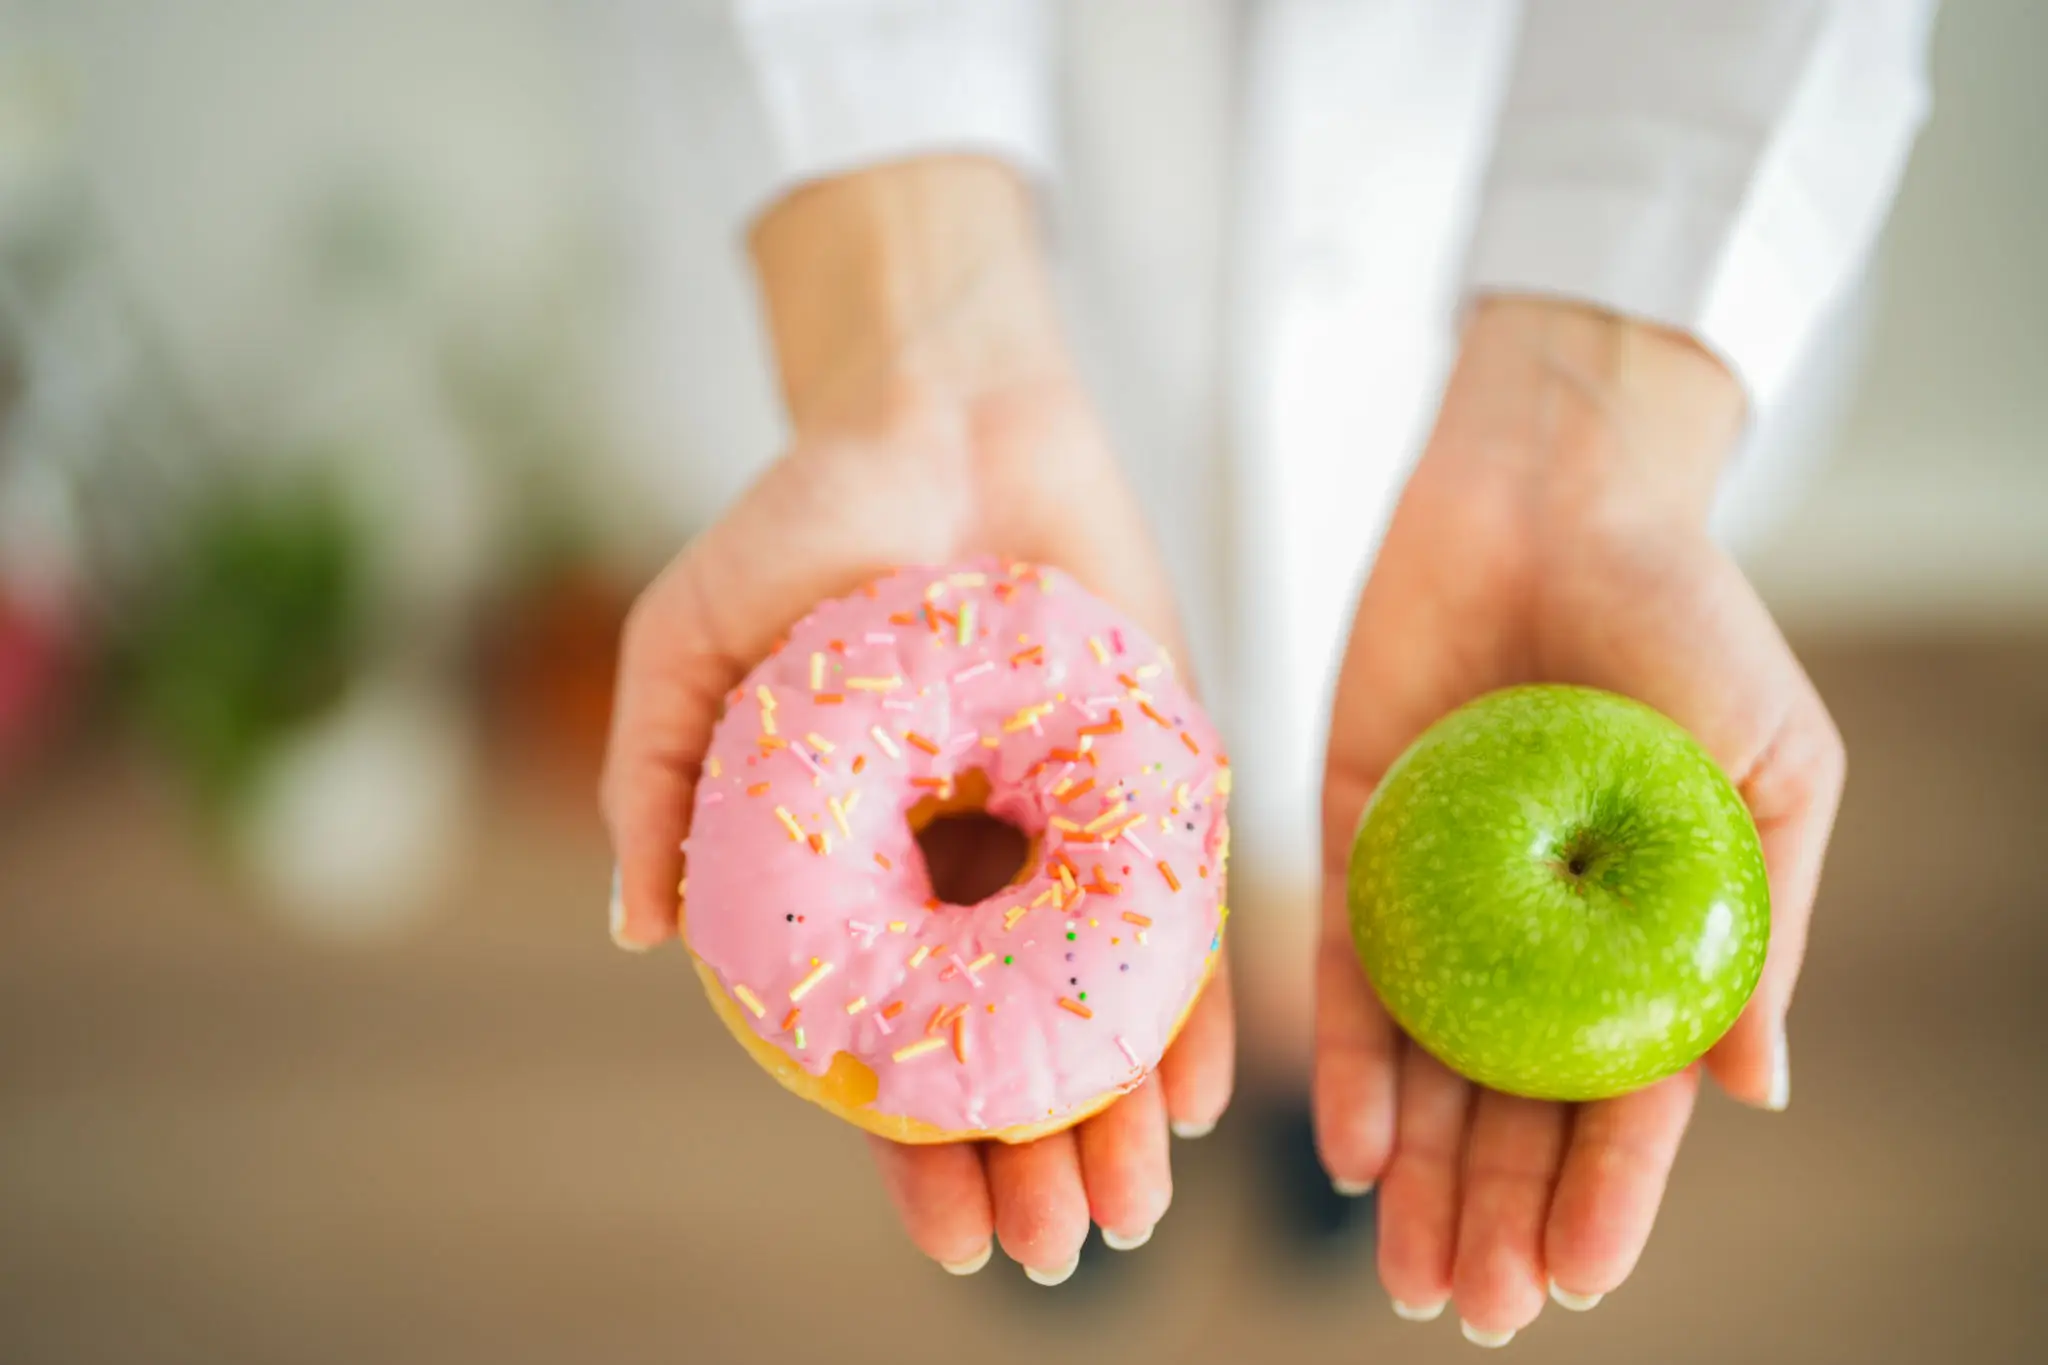 질병예방에 좋은 음식을 소개하기 위해 왼쪽엔 도너츠, 오른쪽엔 사과를 표현